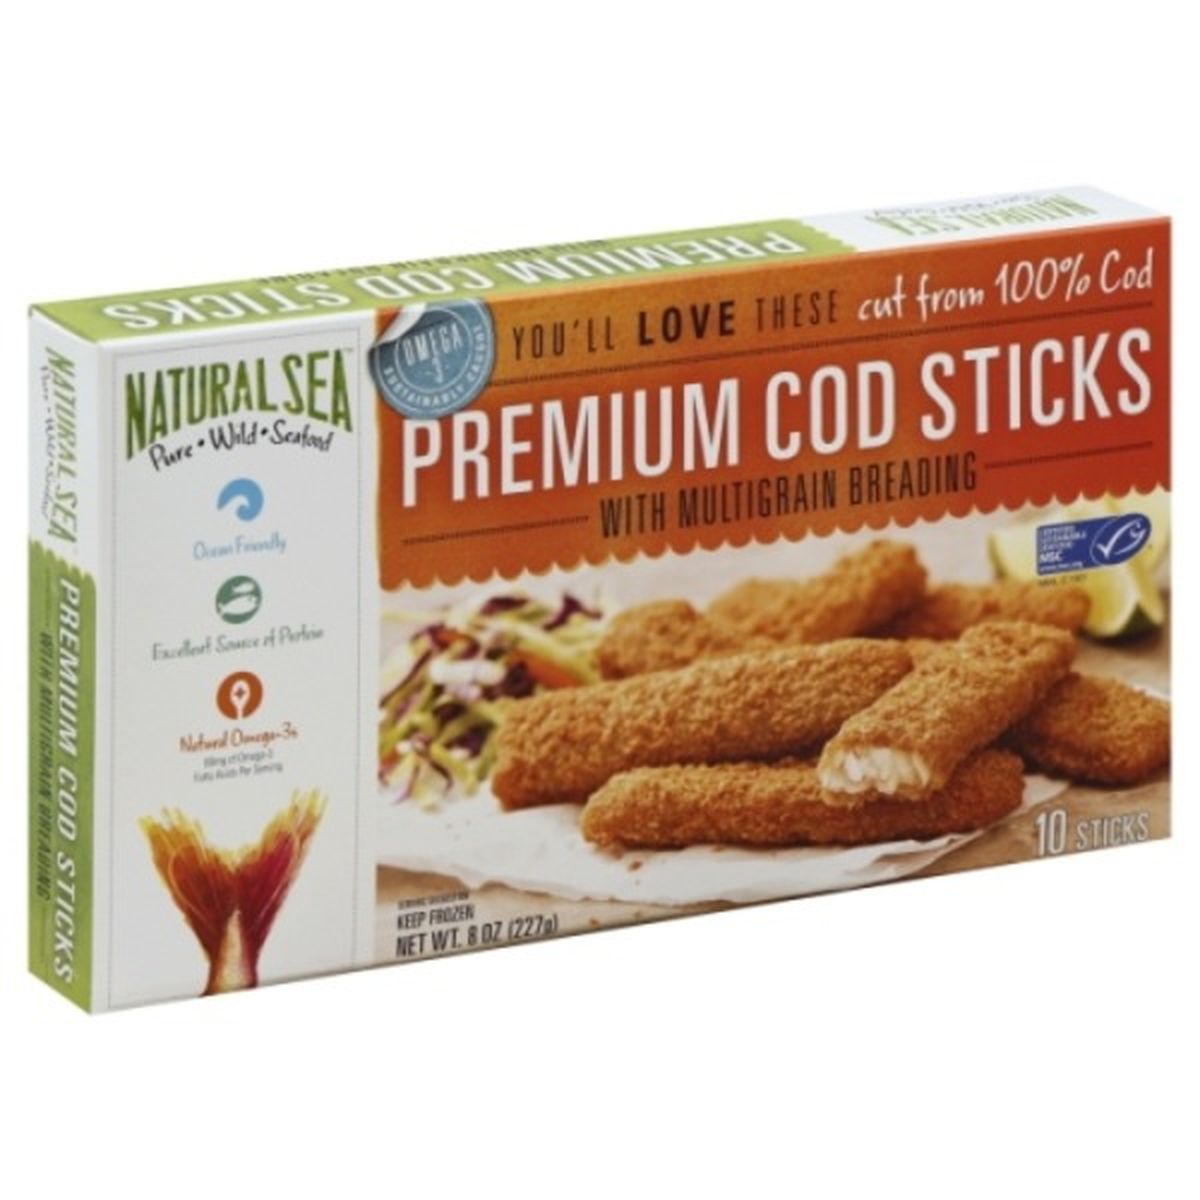 Calories in NATURAL SEA Cod Sticks, Premium, with Multigrain Breading